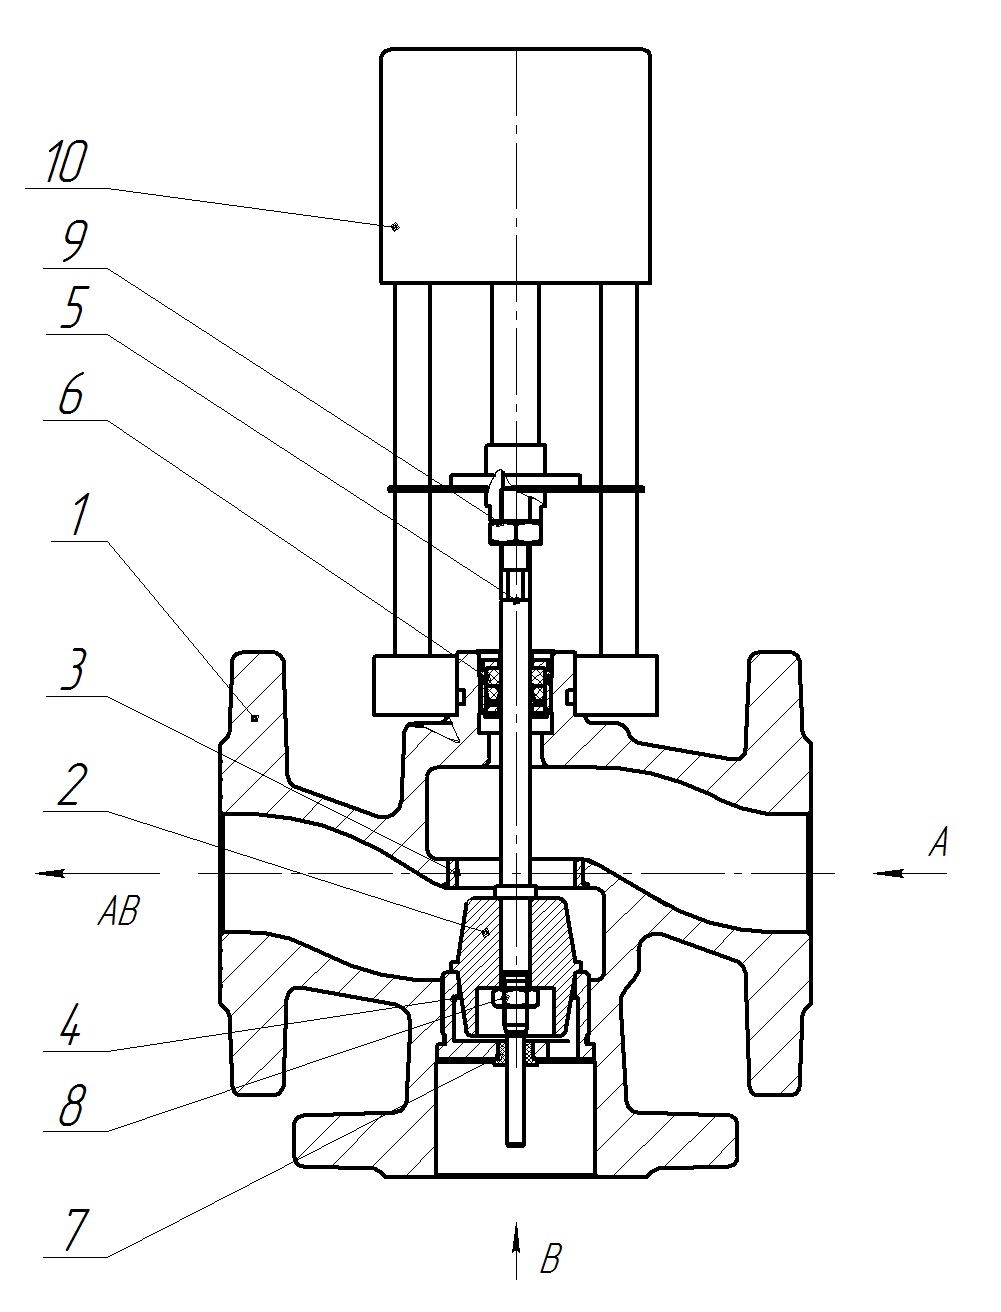 Клапан регулирующий трехходовой разделительный DN.ru 23ч901нж Ду50 Ру16 Kvs40 серый чугун СЧ20, фланцевый, Tmax до 150°С с электроприводом Катрабел TW-500-XD220